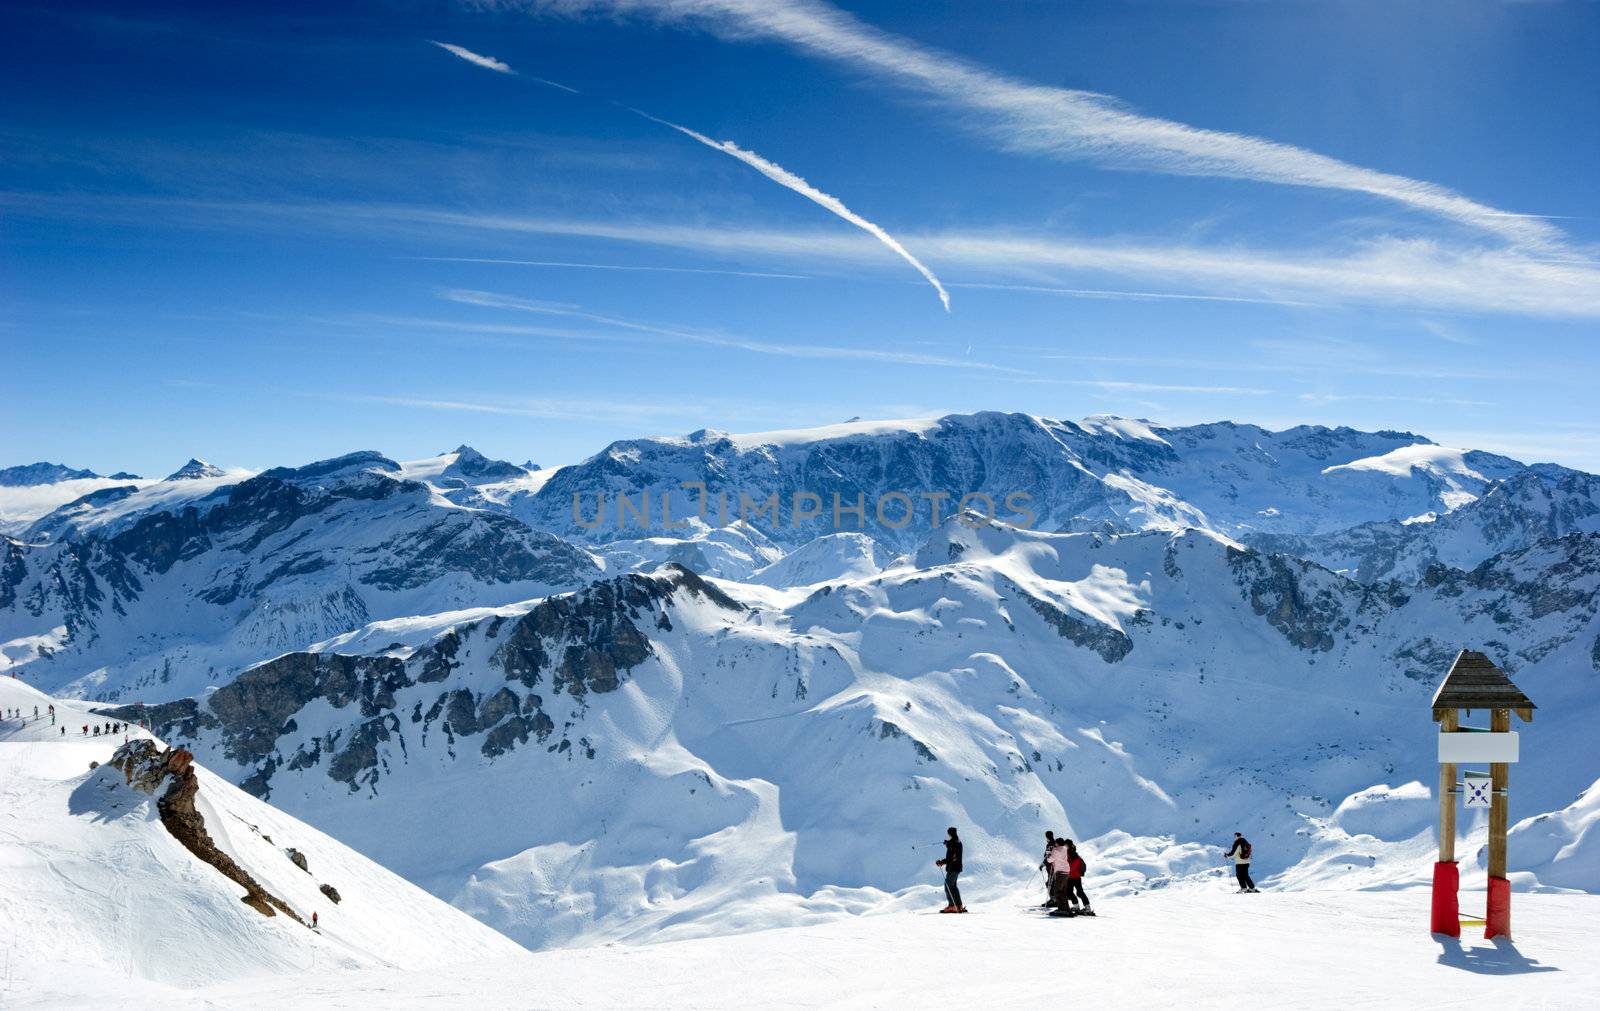 Ski slope by naumoid